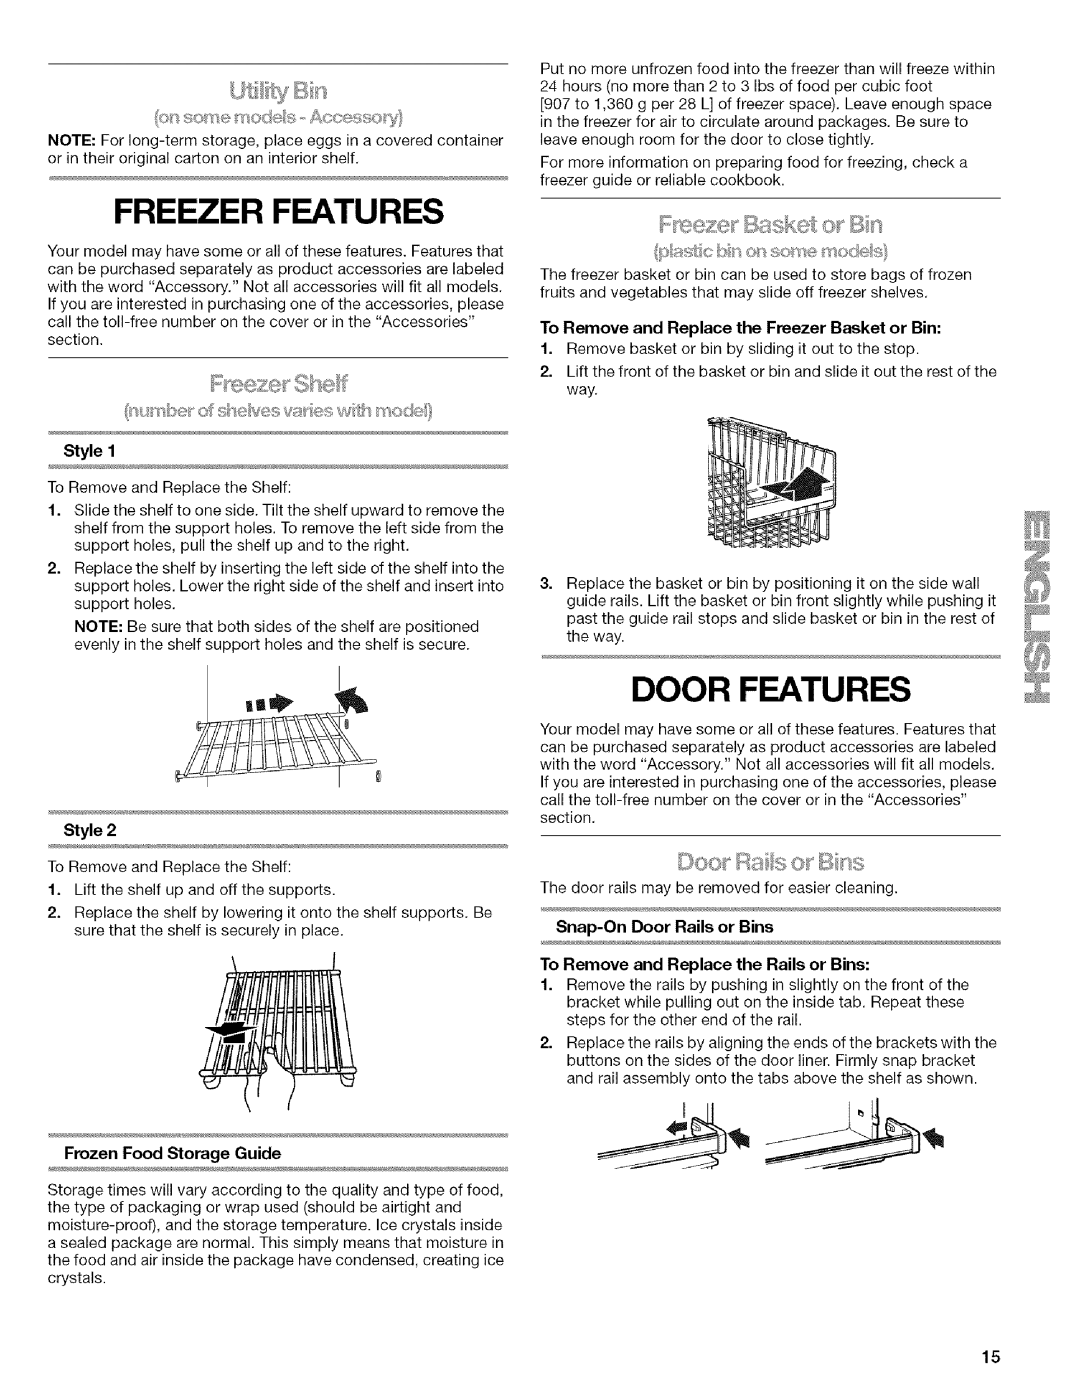 Kenmore WIOI67097A manual Freezer Features, Door Features, Frozen Food Storage Guide, Snap-OnDoor Rails or Bins 